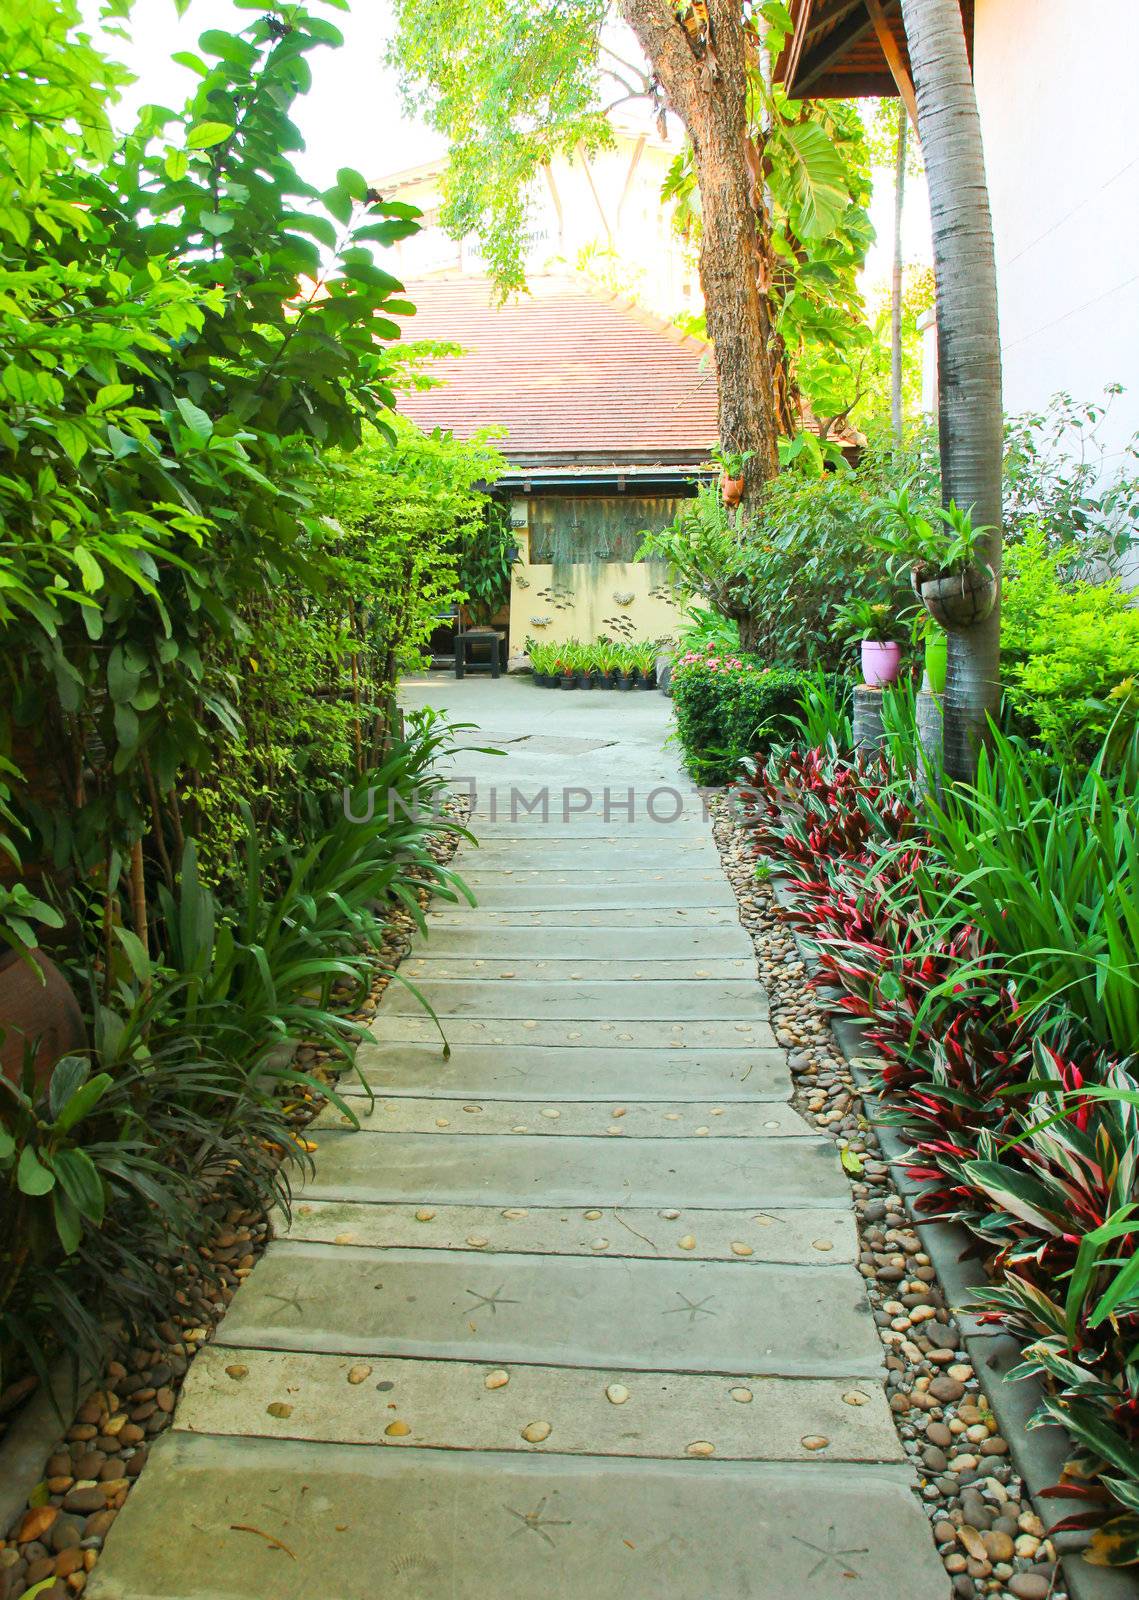 Stone pathway into tropical garden